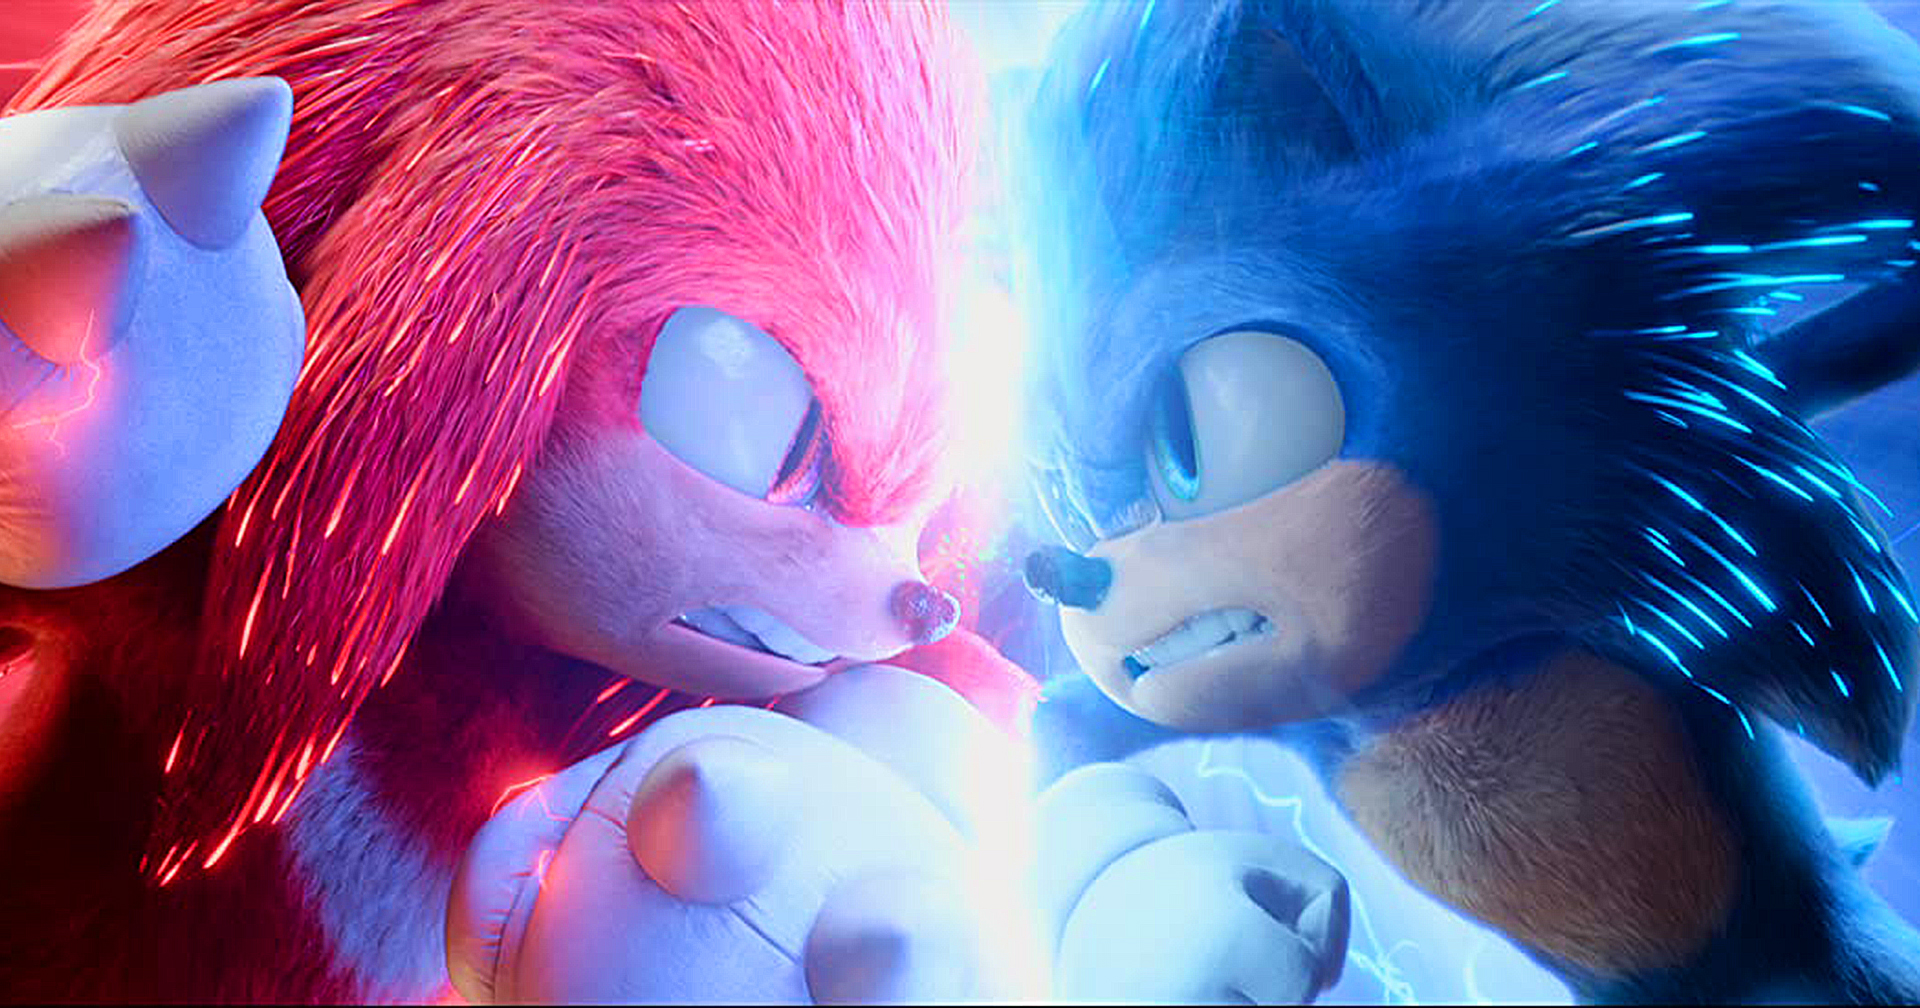 ‘Sonic the Hedgehog 2’ ทุบสถิติภาพยนต์จากวิดีโอเกมที่ทำรายได้เปิดตัวสูงสุด